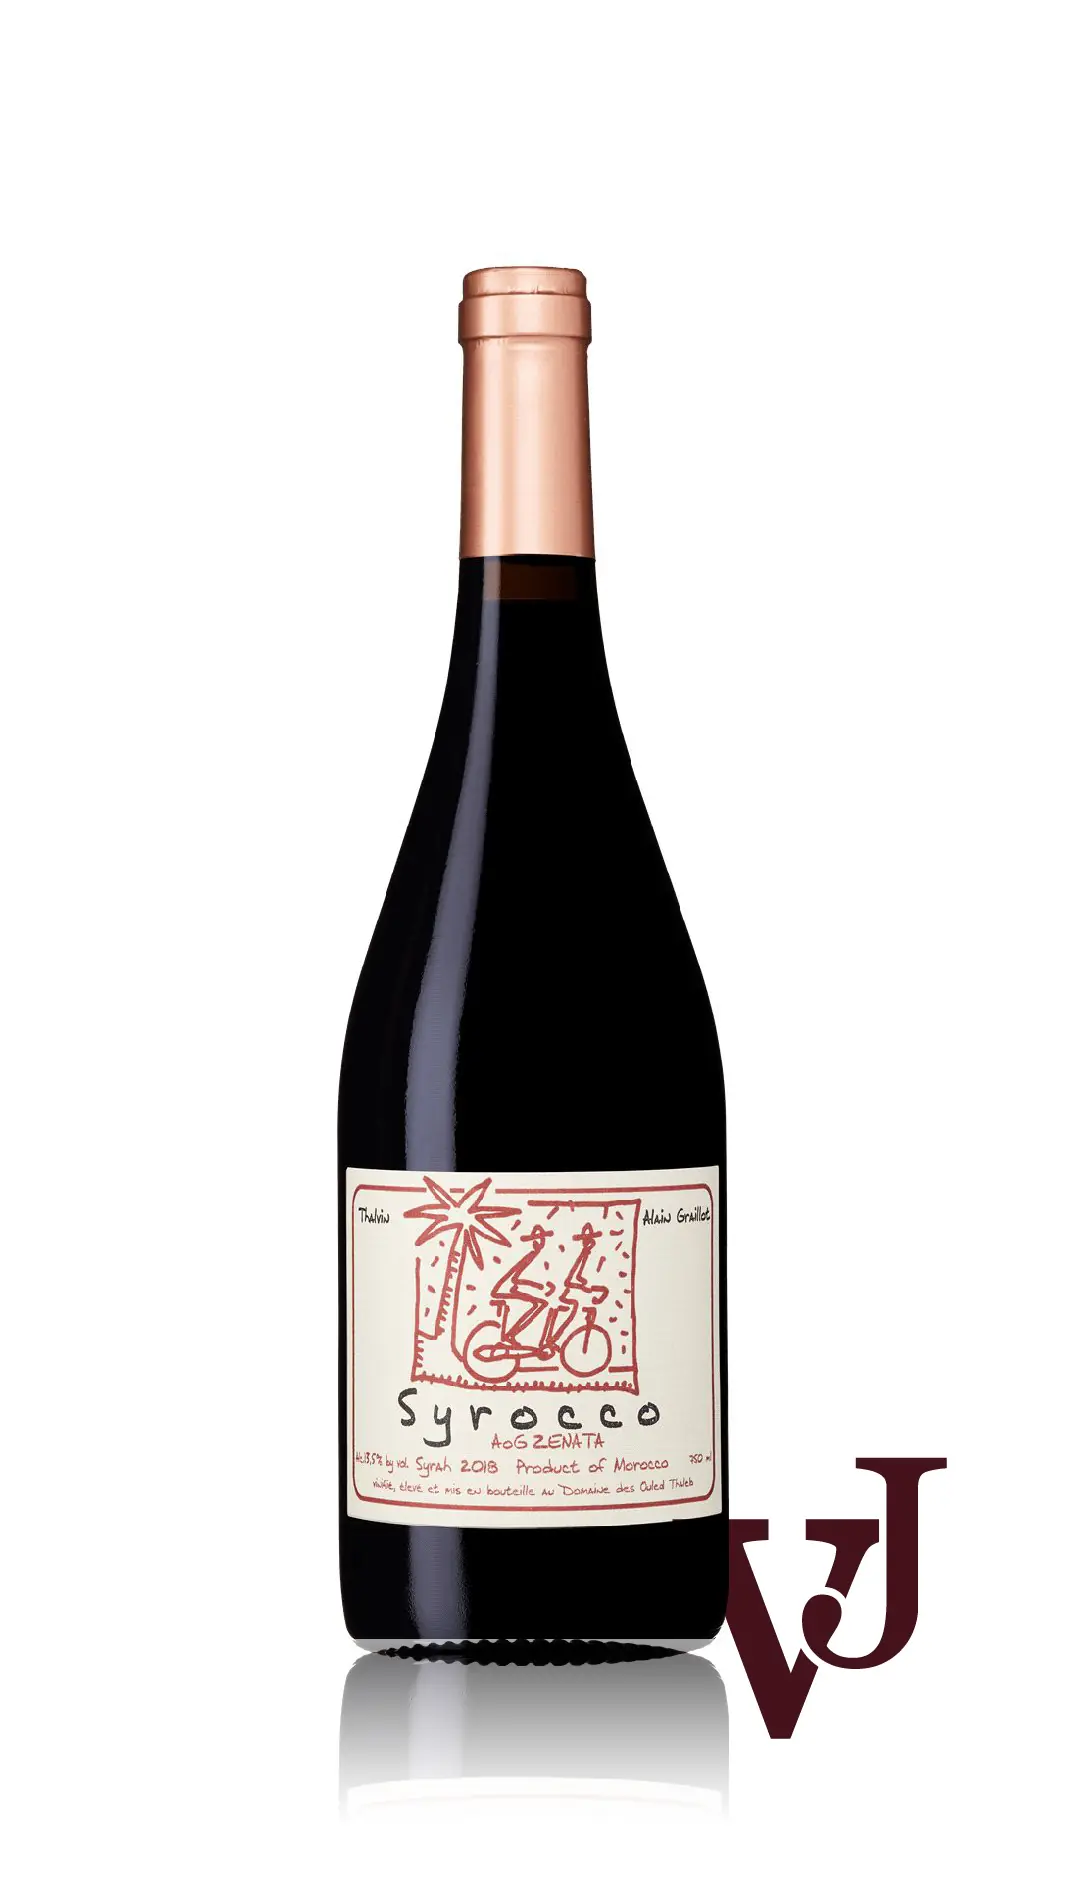 Rött Vin - Syrocco Syrah artikel nummer 7123101 från producenten Alain Graillot från området Marocko - Vinjournalen.se